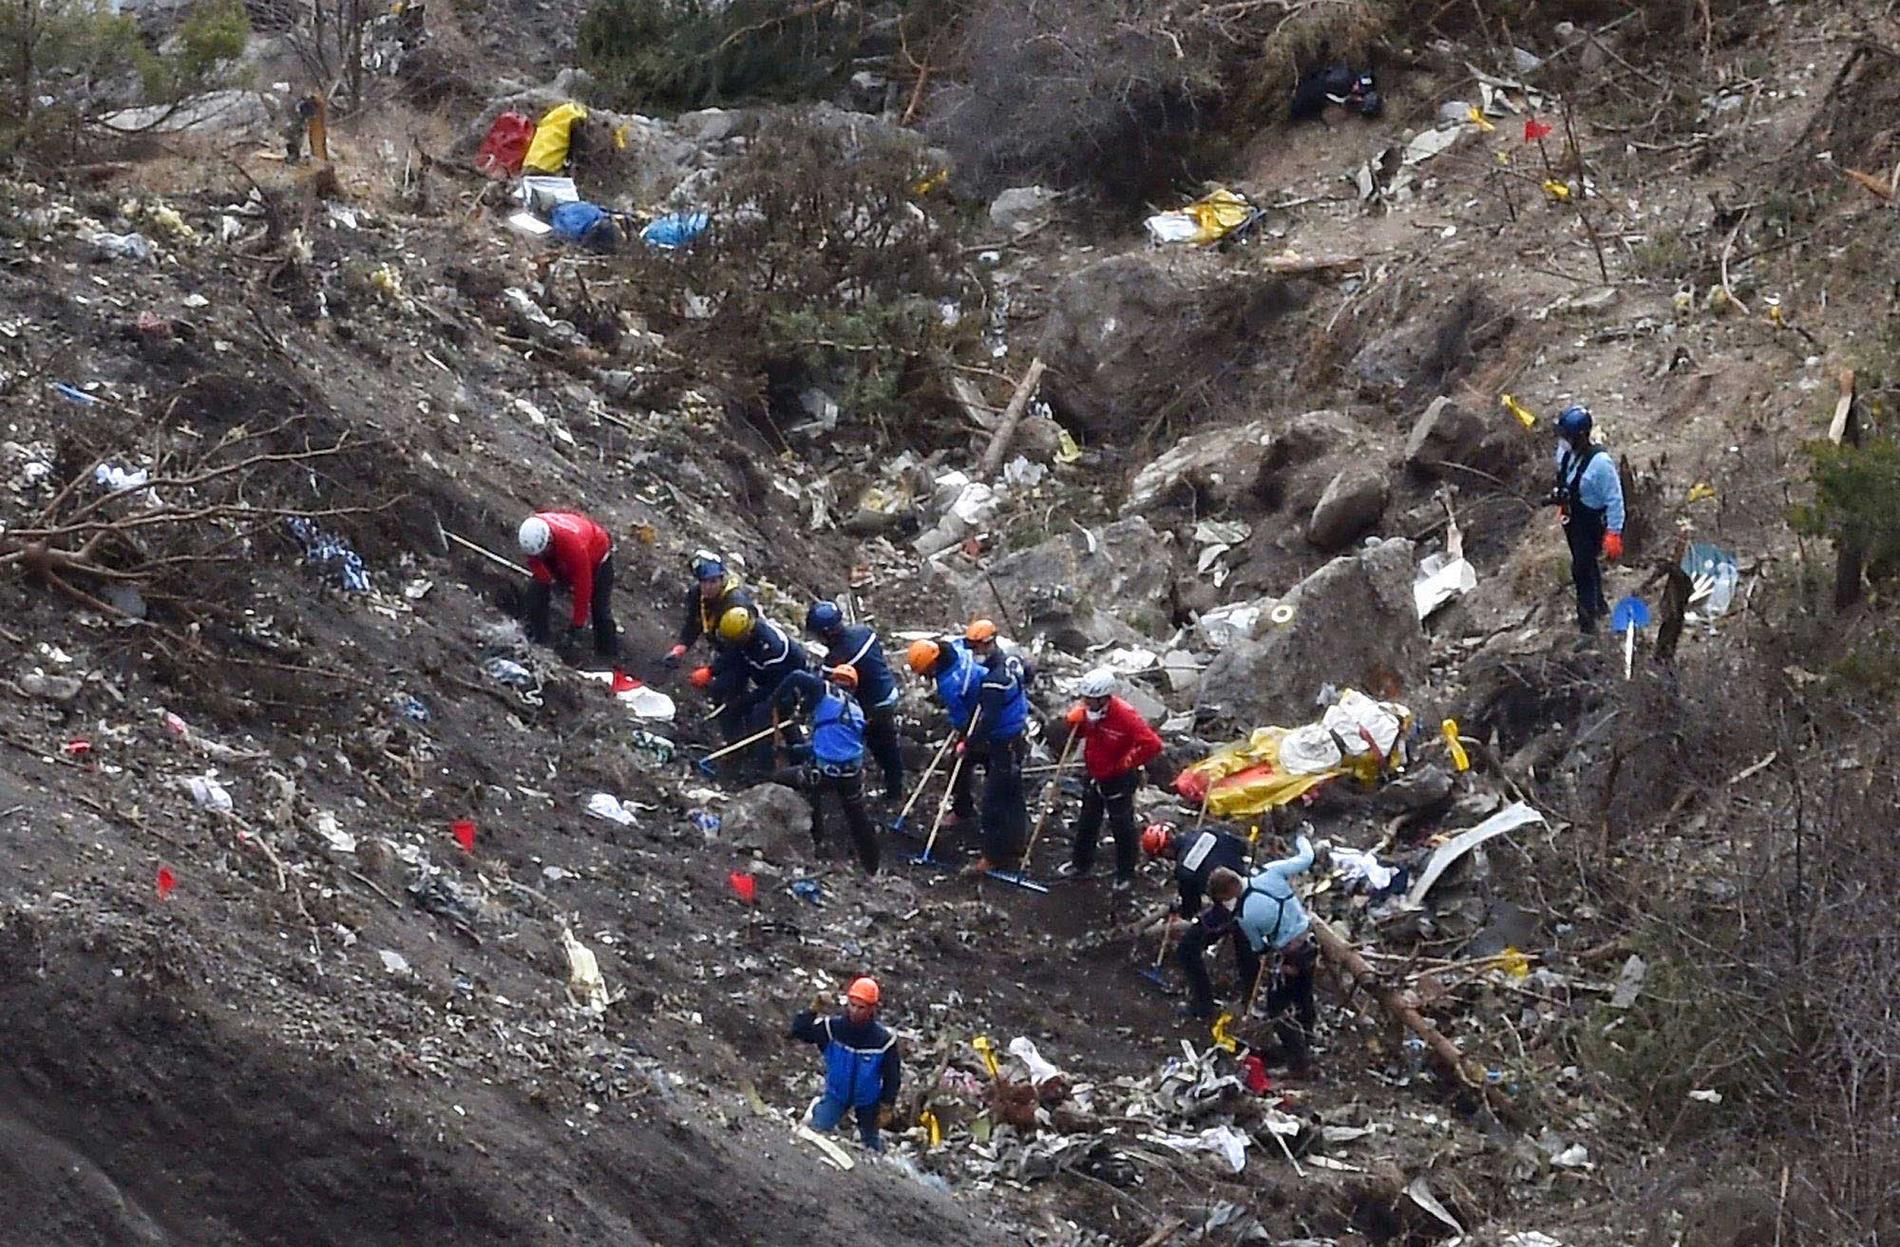 Piloten Andreas Lubitz, 27, kraschade den 24 mars Germanwings flight 9525 mot en alptopp och tog med sig 149 människor i döden.